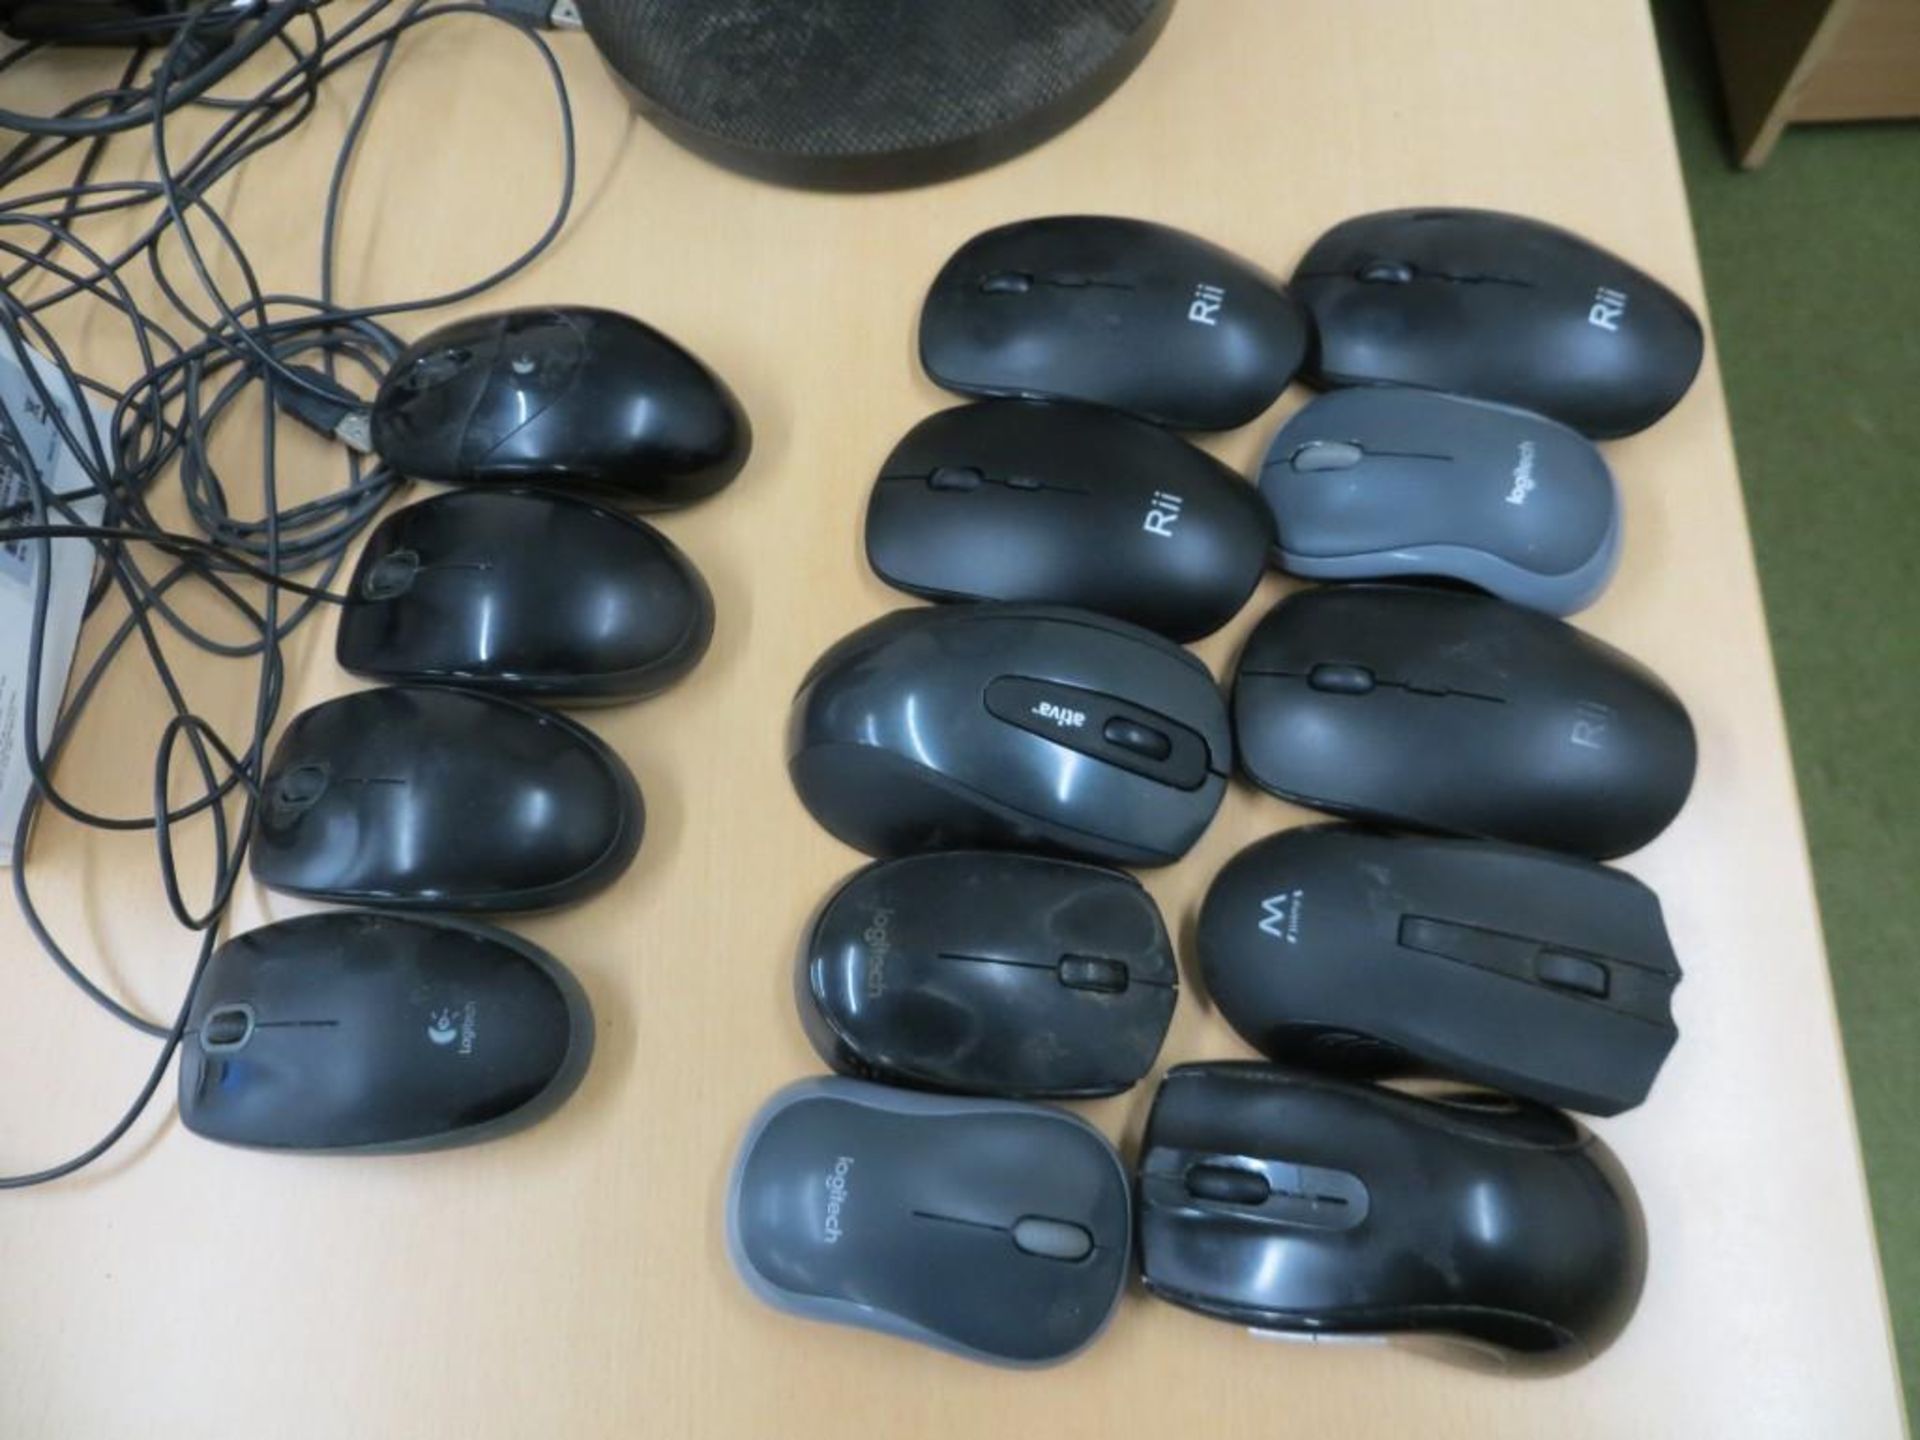 Seven Logitech keyboards, Four Rii wireless keyboards, 10 various wireless mice, 4 various mice, 2 - Image 4 of 4